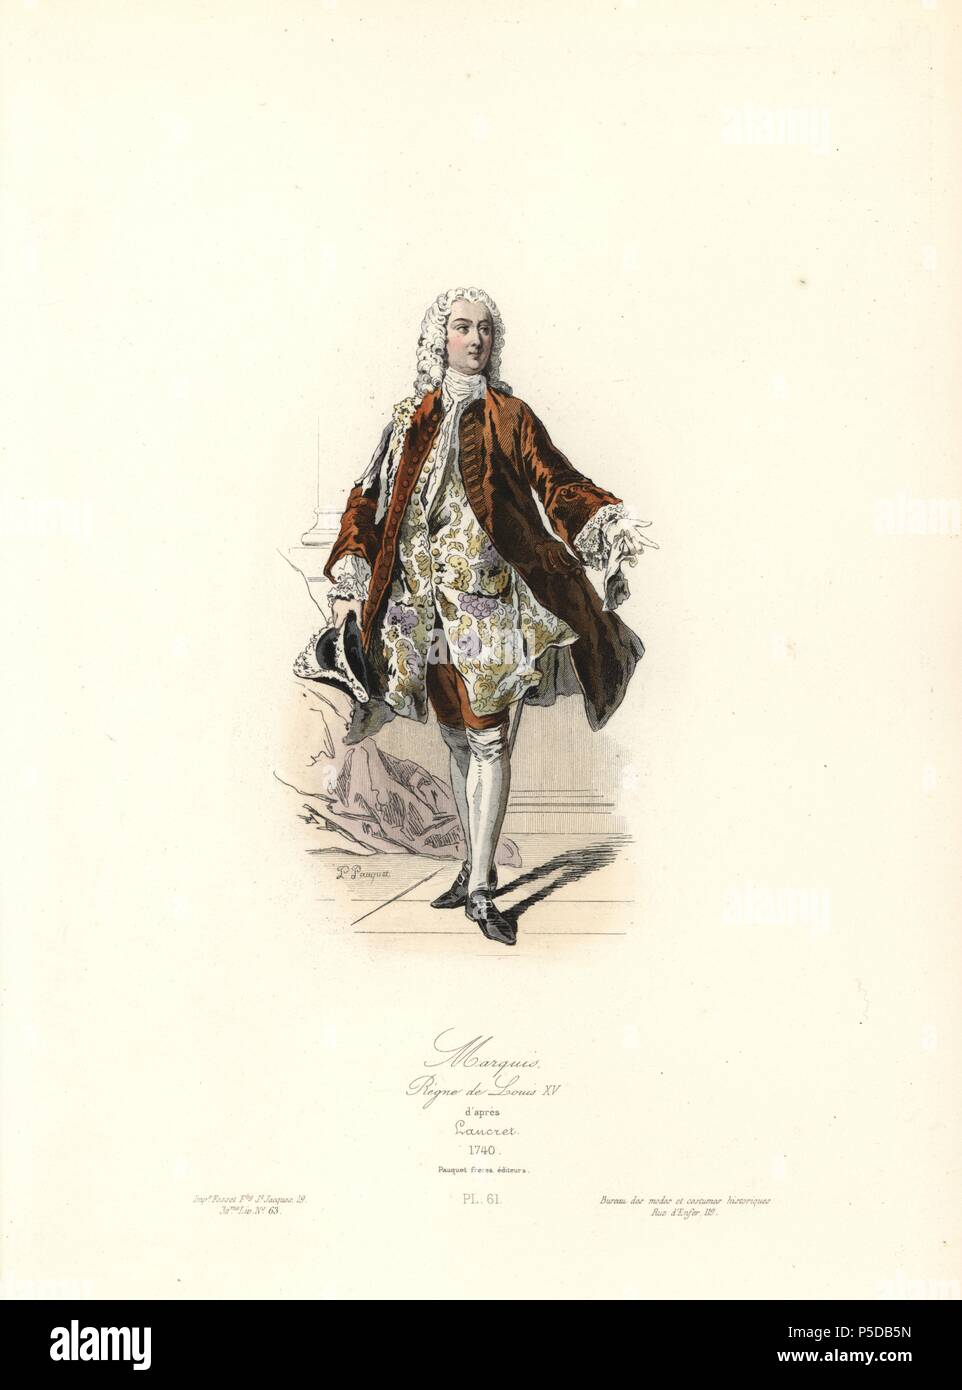 Chaussure. Les modes sous Louis XV. La mode du rococo.